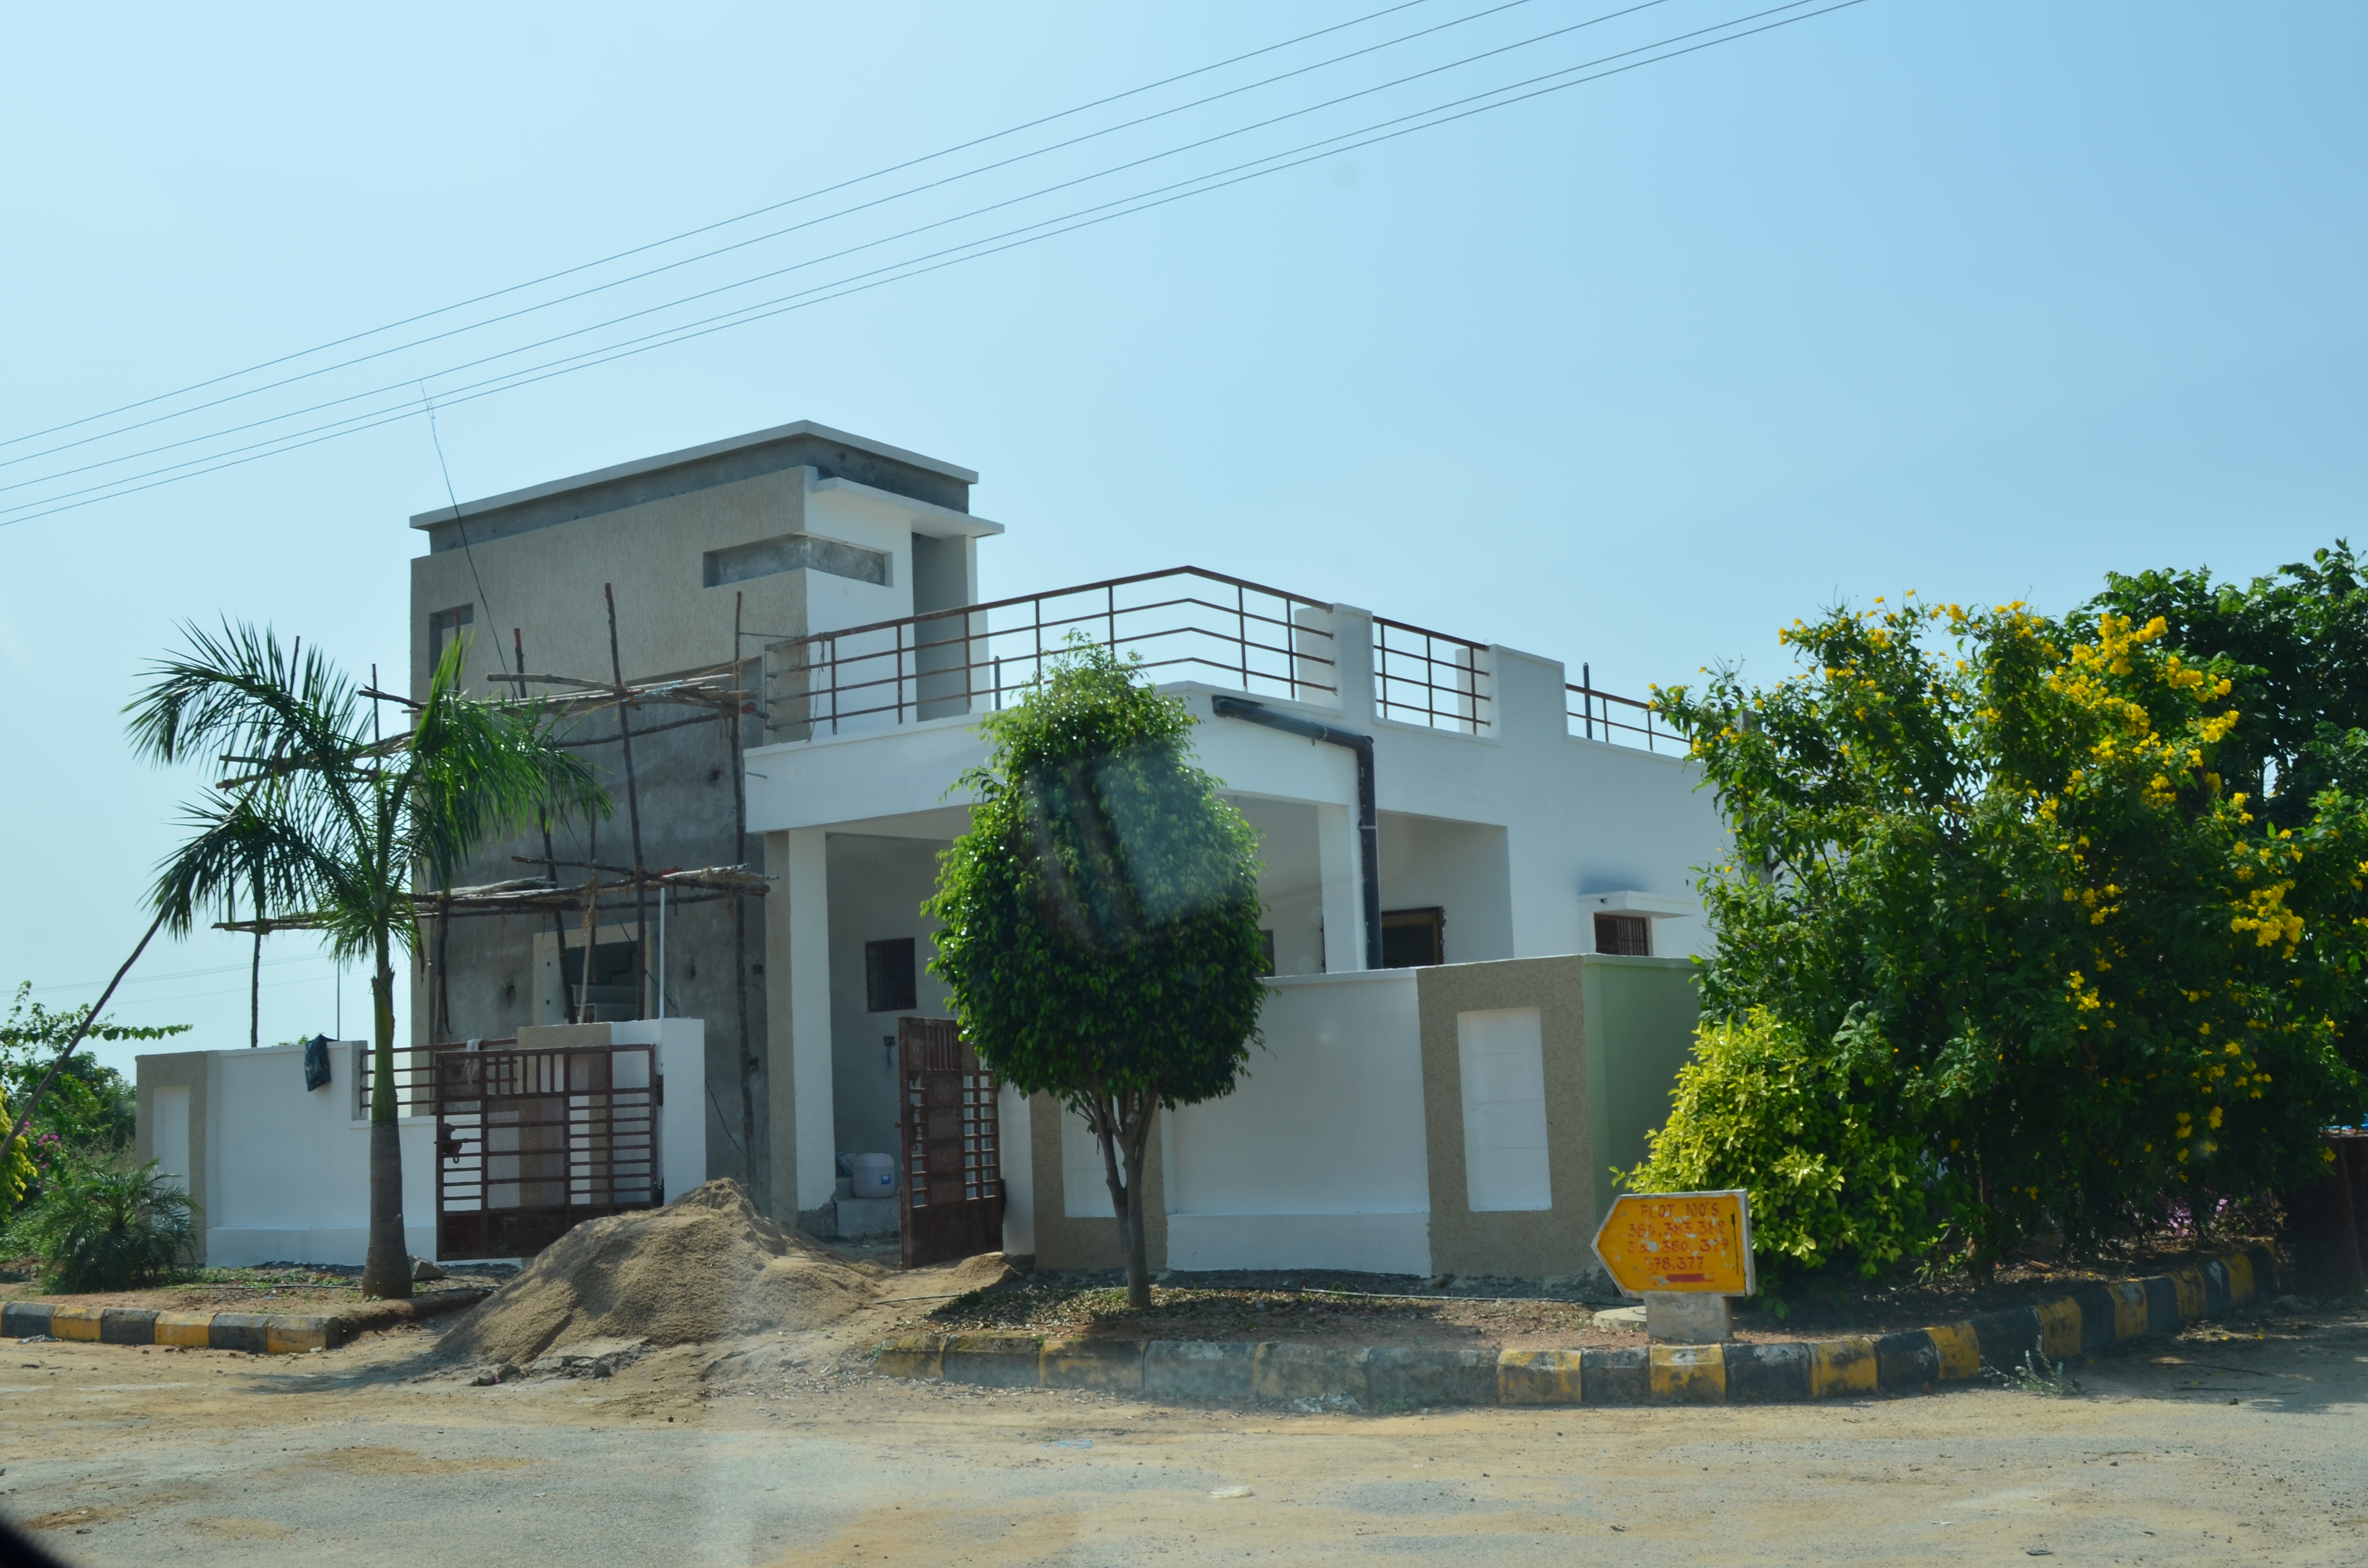 Kapial Homes Madikonda Site Images